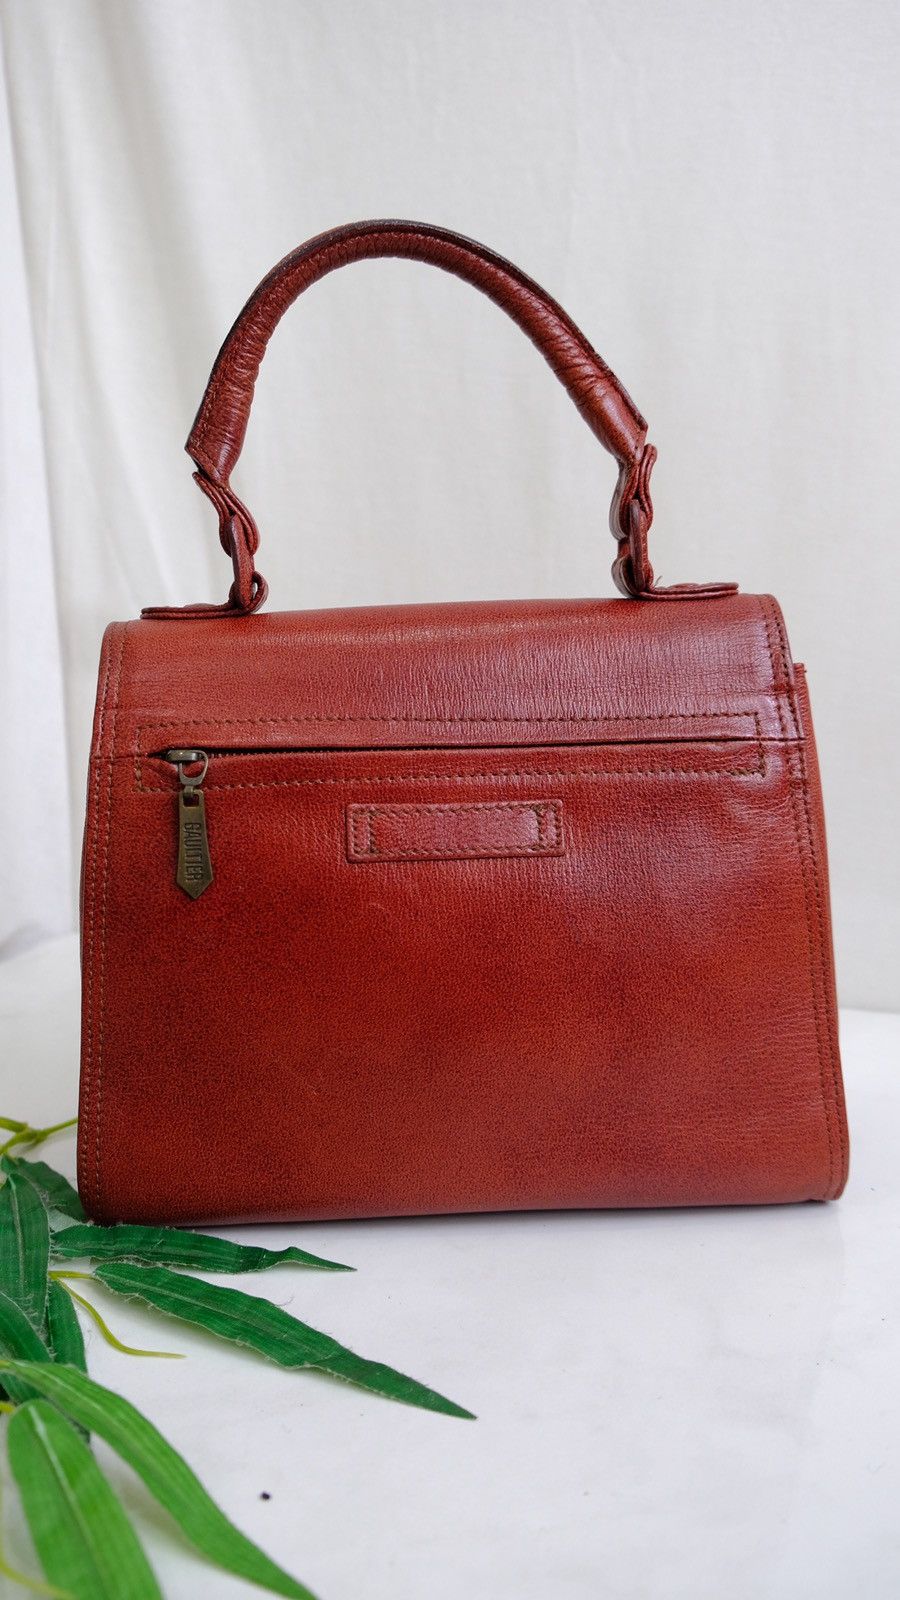 Vintage Jean Paul gualtire marron leather handbag - 2